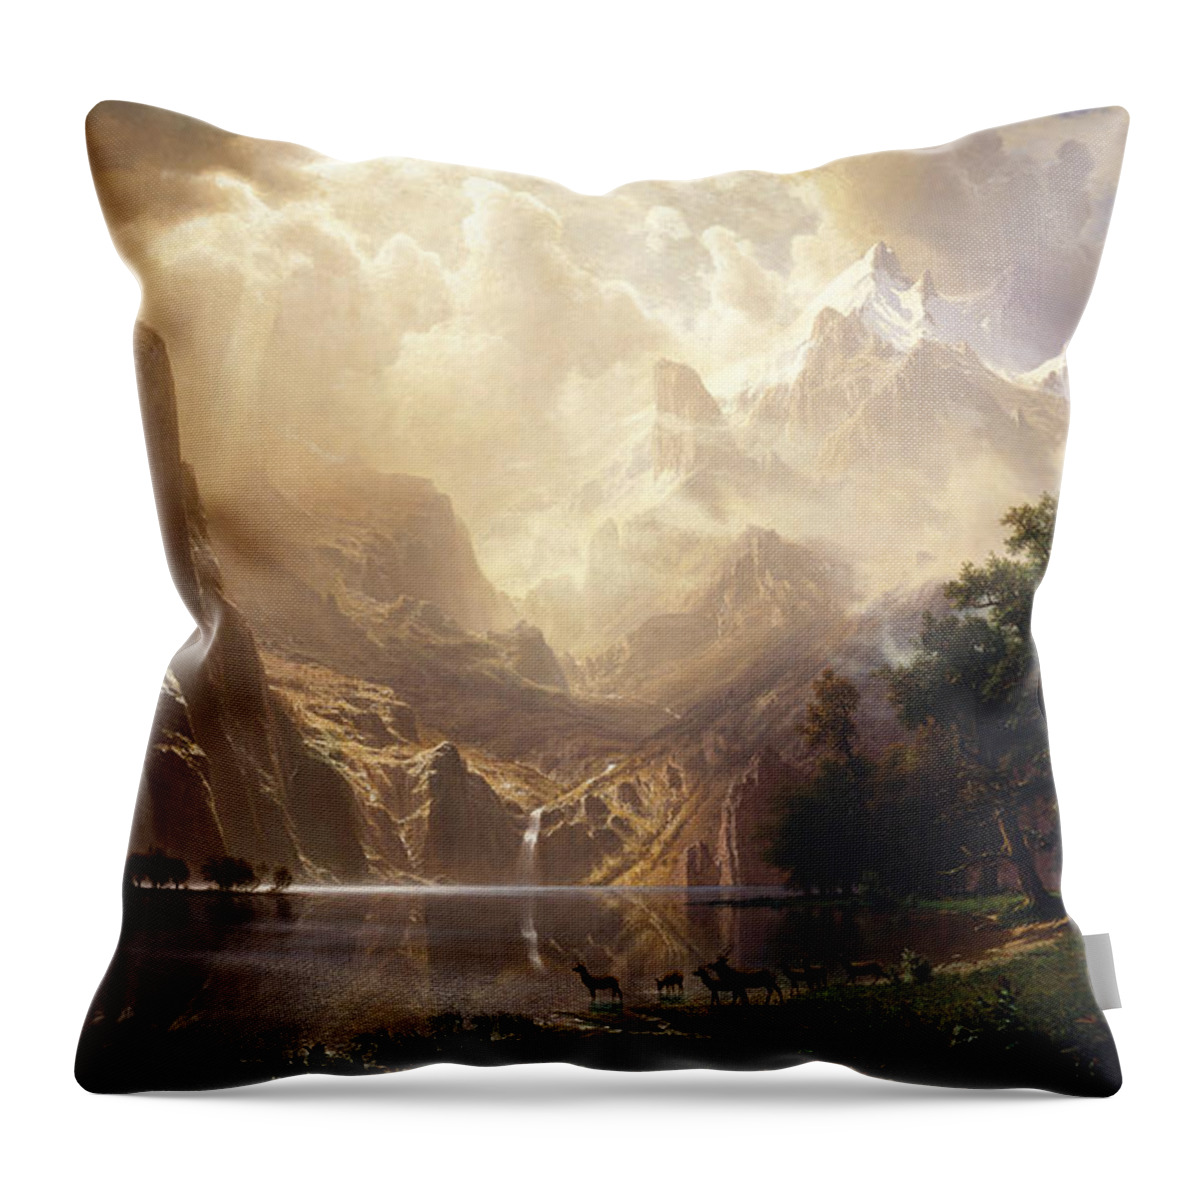 Albert Bierstadt Throw Pillow featuring the painting Among the Sierra Nevada by Albert Bierstadt